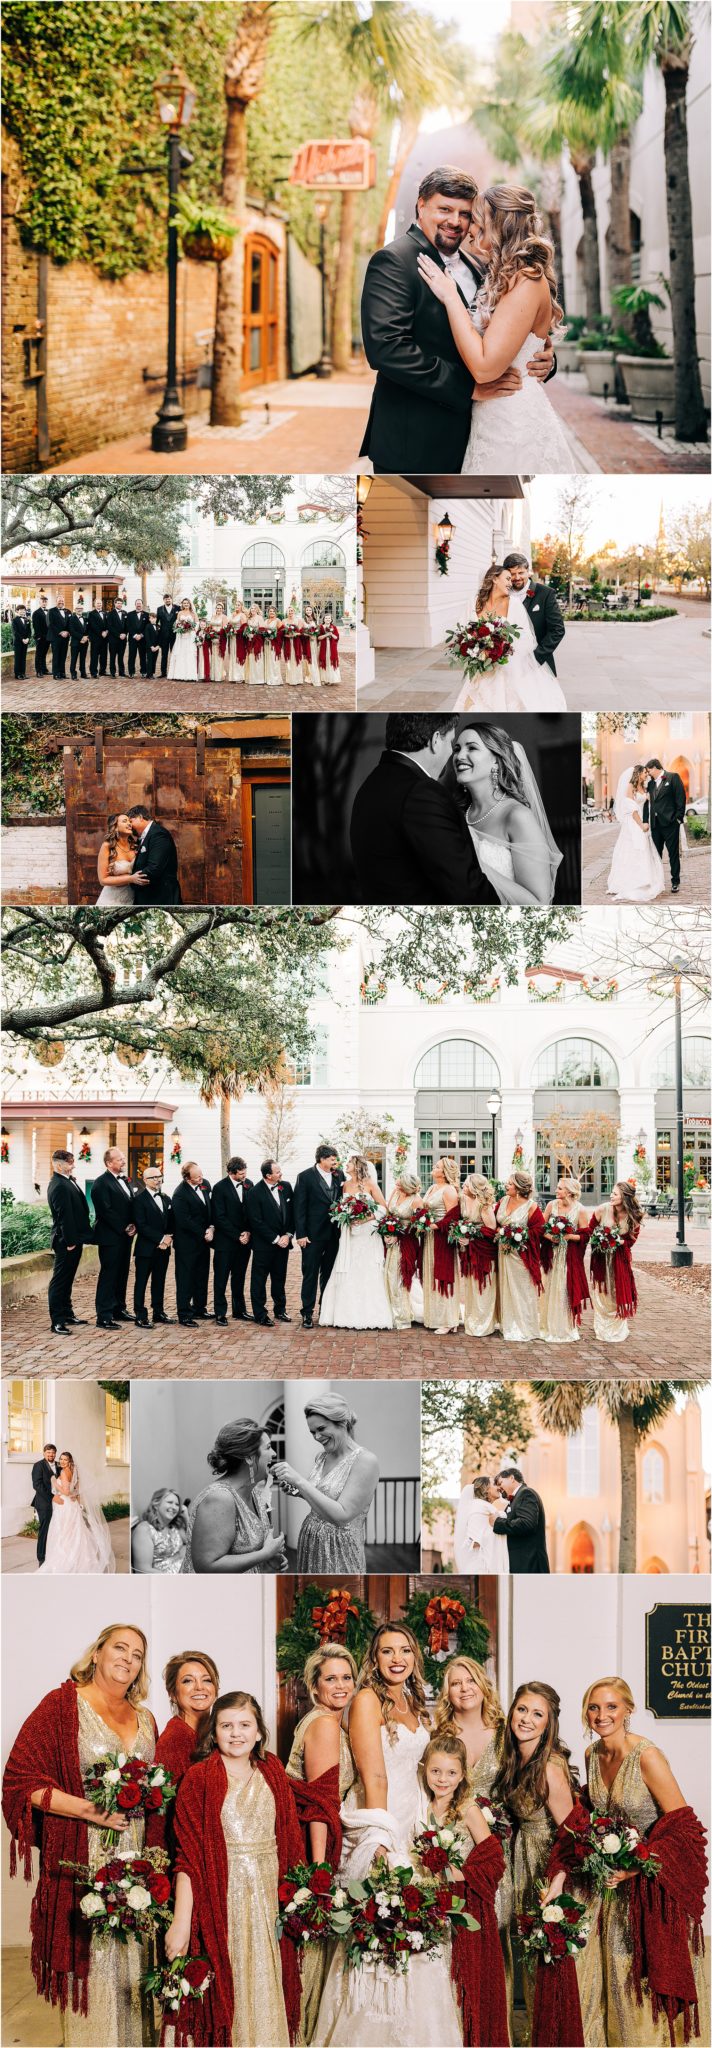 A Winter Wedding at the SC Aquarium, SC Auarium Wedding, Aquarium Wedding, Cory Lee Photography, Charleston Photographer, Charleston Wedding Photographers